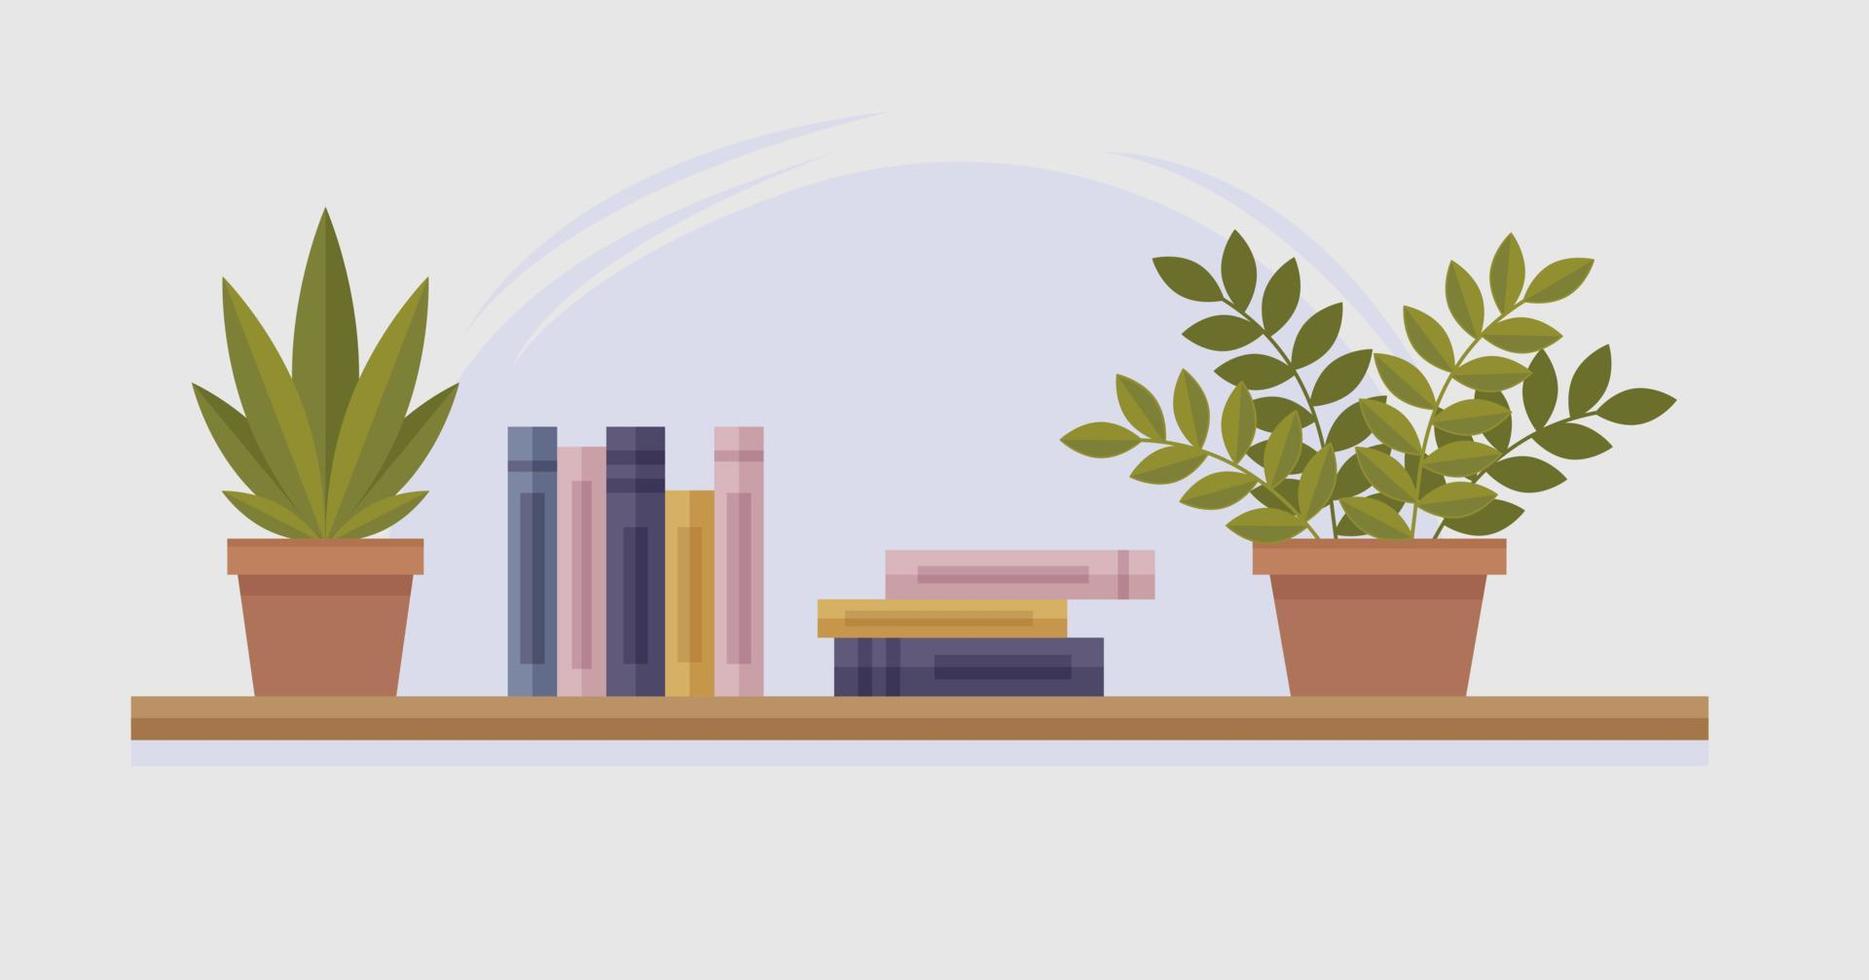 Bücherregal. Regal für Bücher mit Pflanzen im Topf. vektorillustration im flachen karikaturstil. vektor